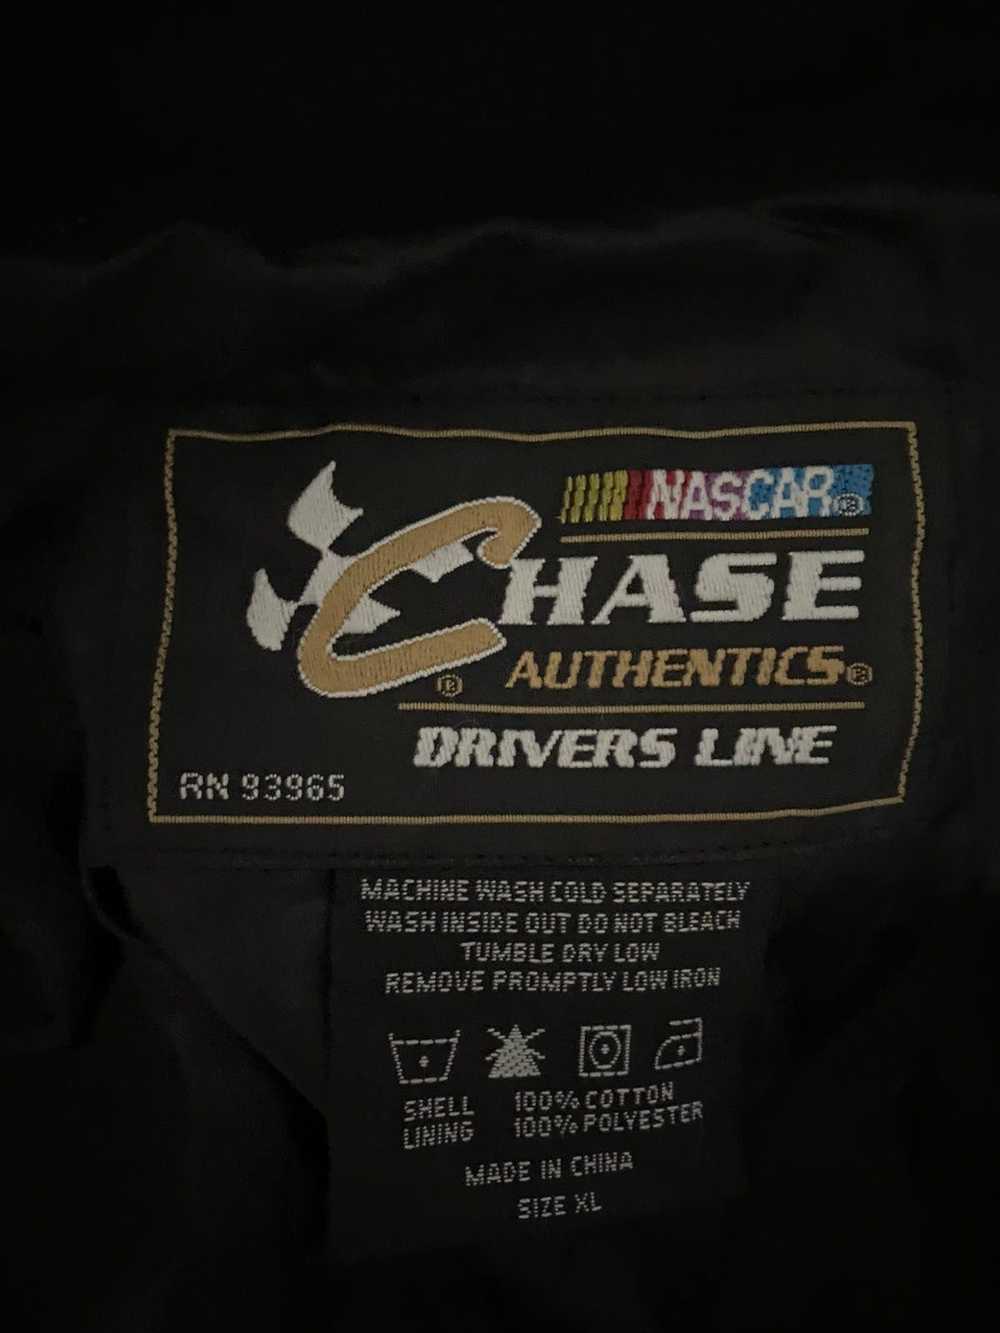 Chase Authentics 3M NASCAR CHASE AUTHENTICS JACKET - image 5